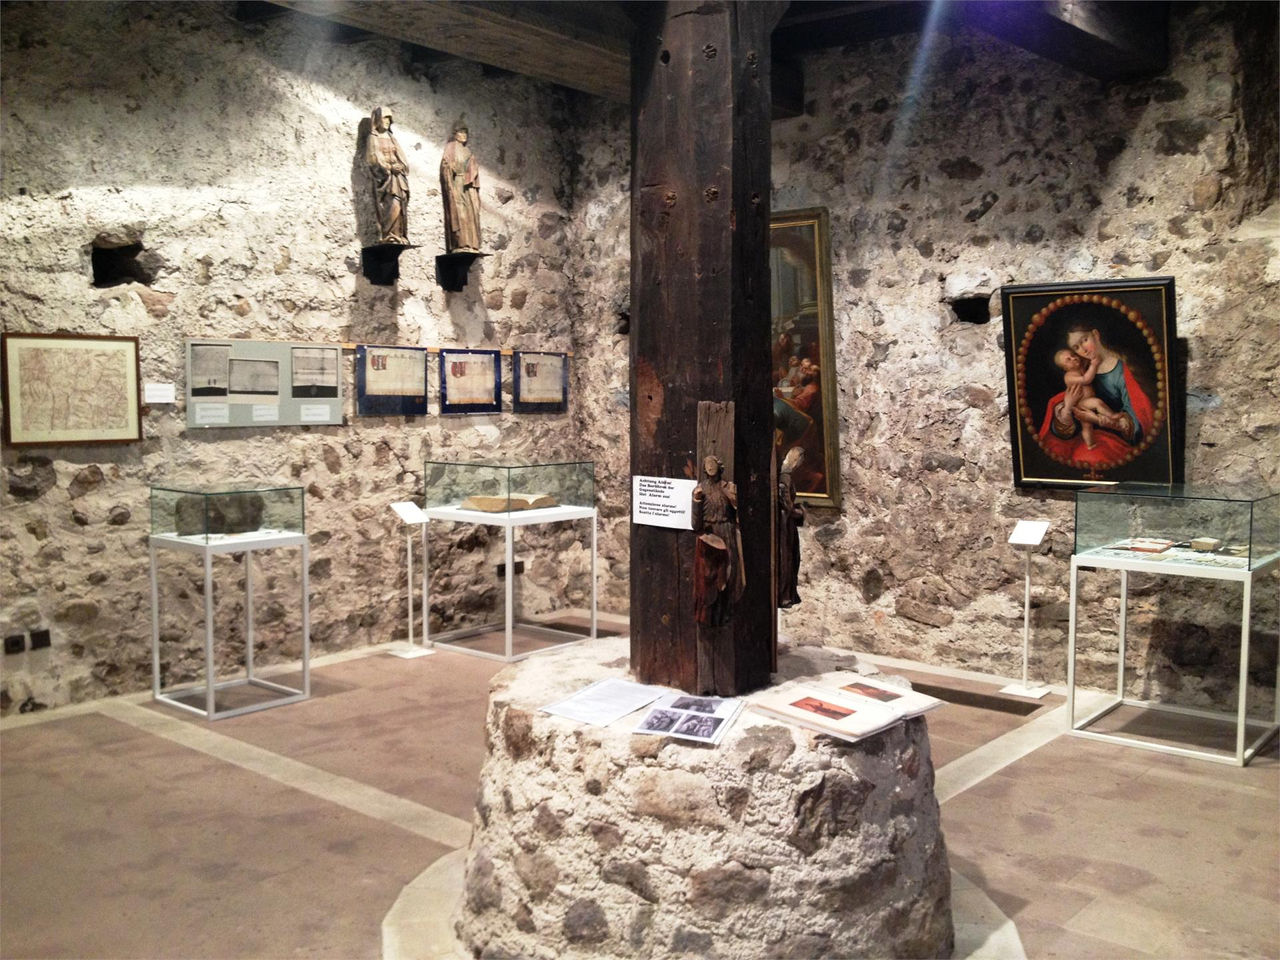 Museo territoriale Nova Ponente - Castello Thurn